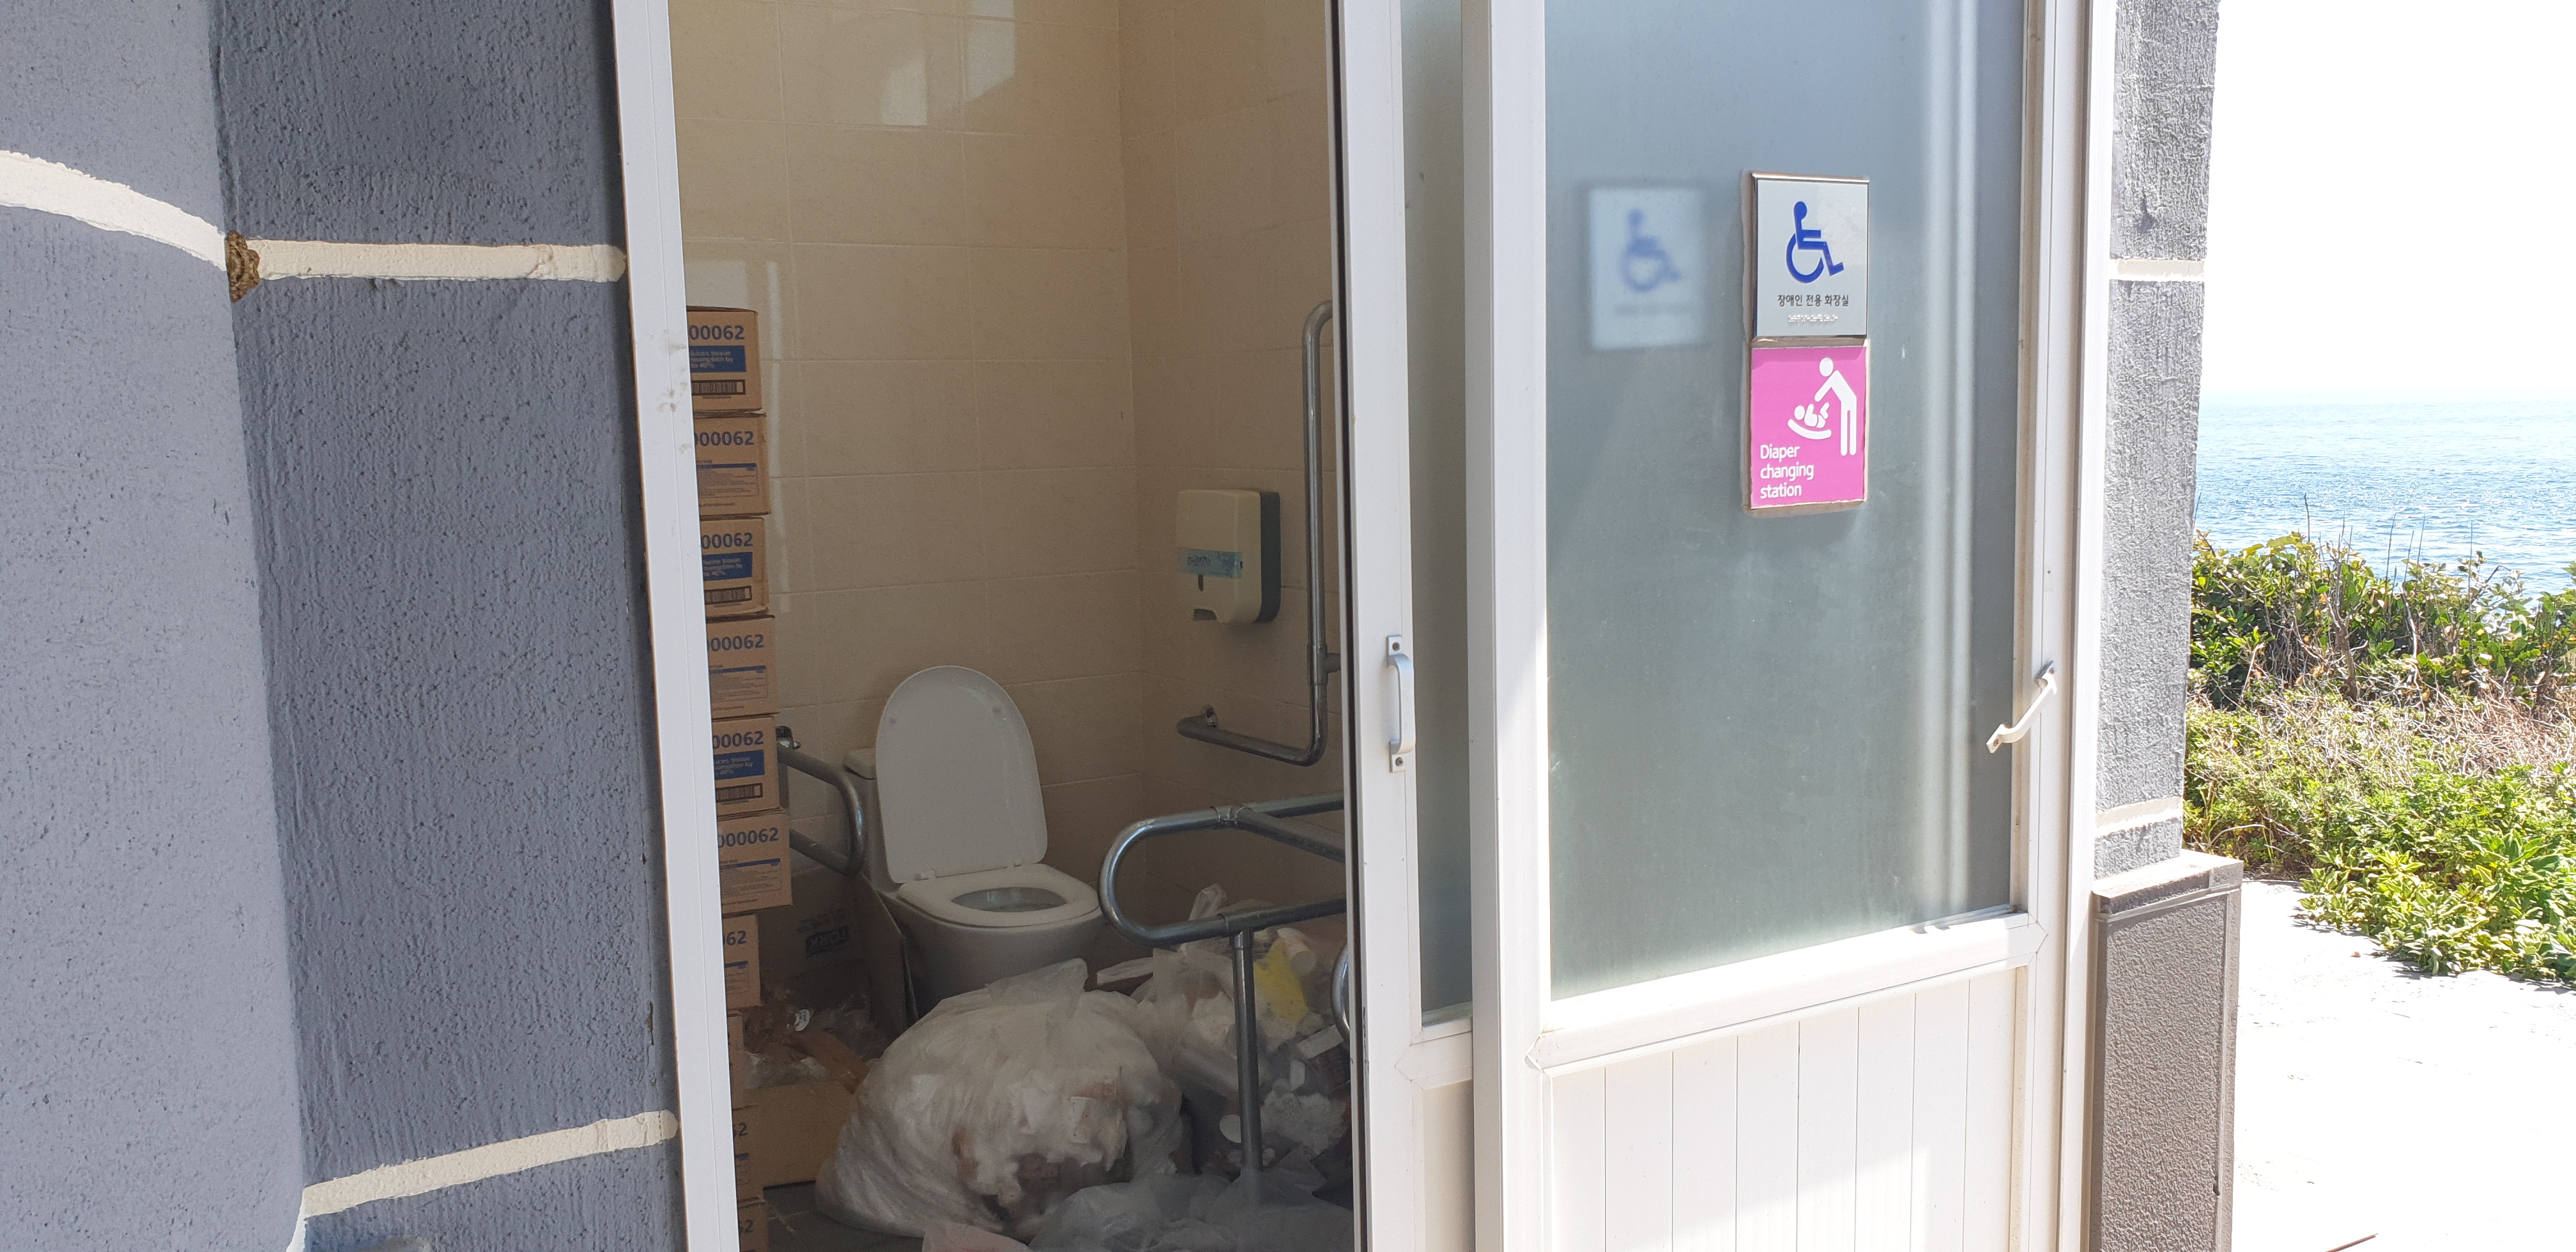 마라도의 한 장애인 화장실은 쓰레기가 방치돼 사용할 수 없었다.  제주 김주연 기자